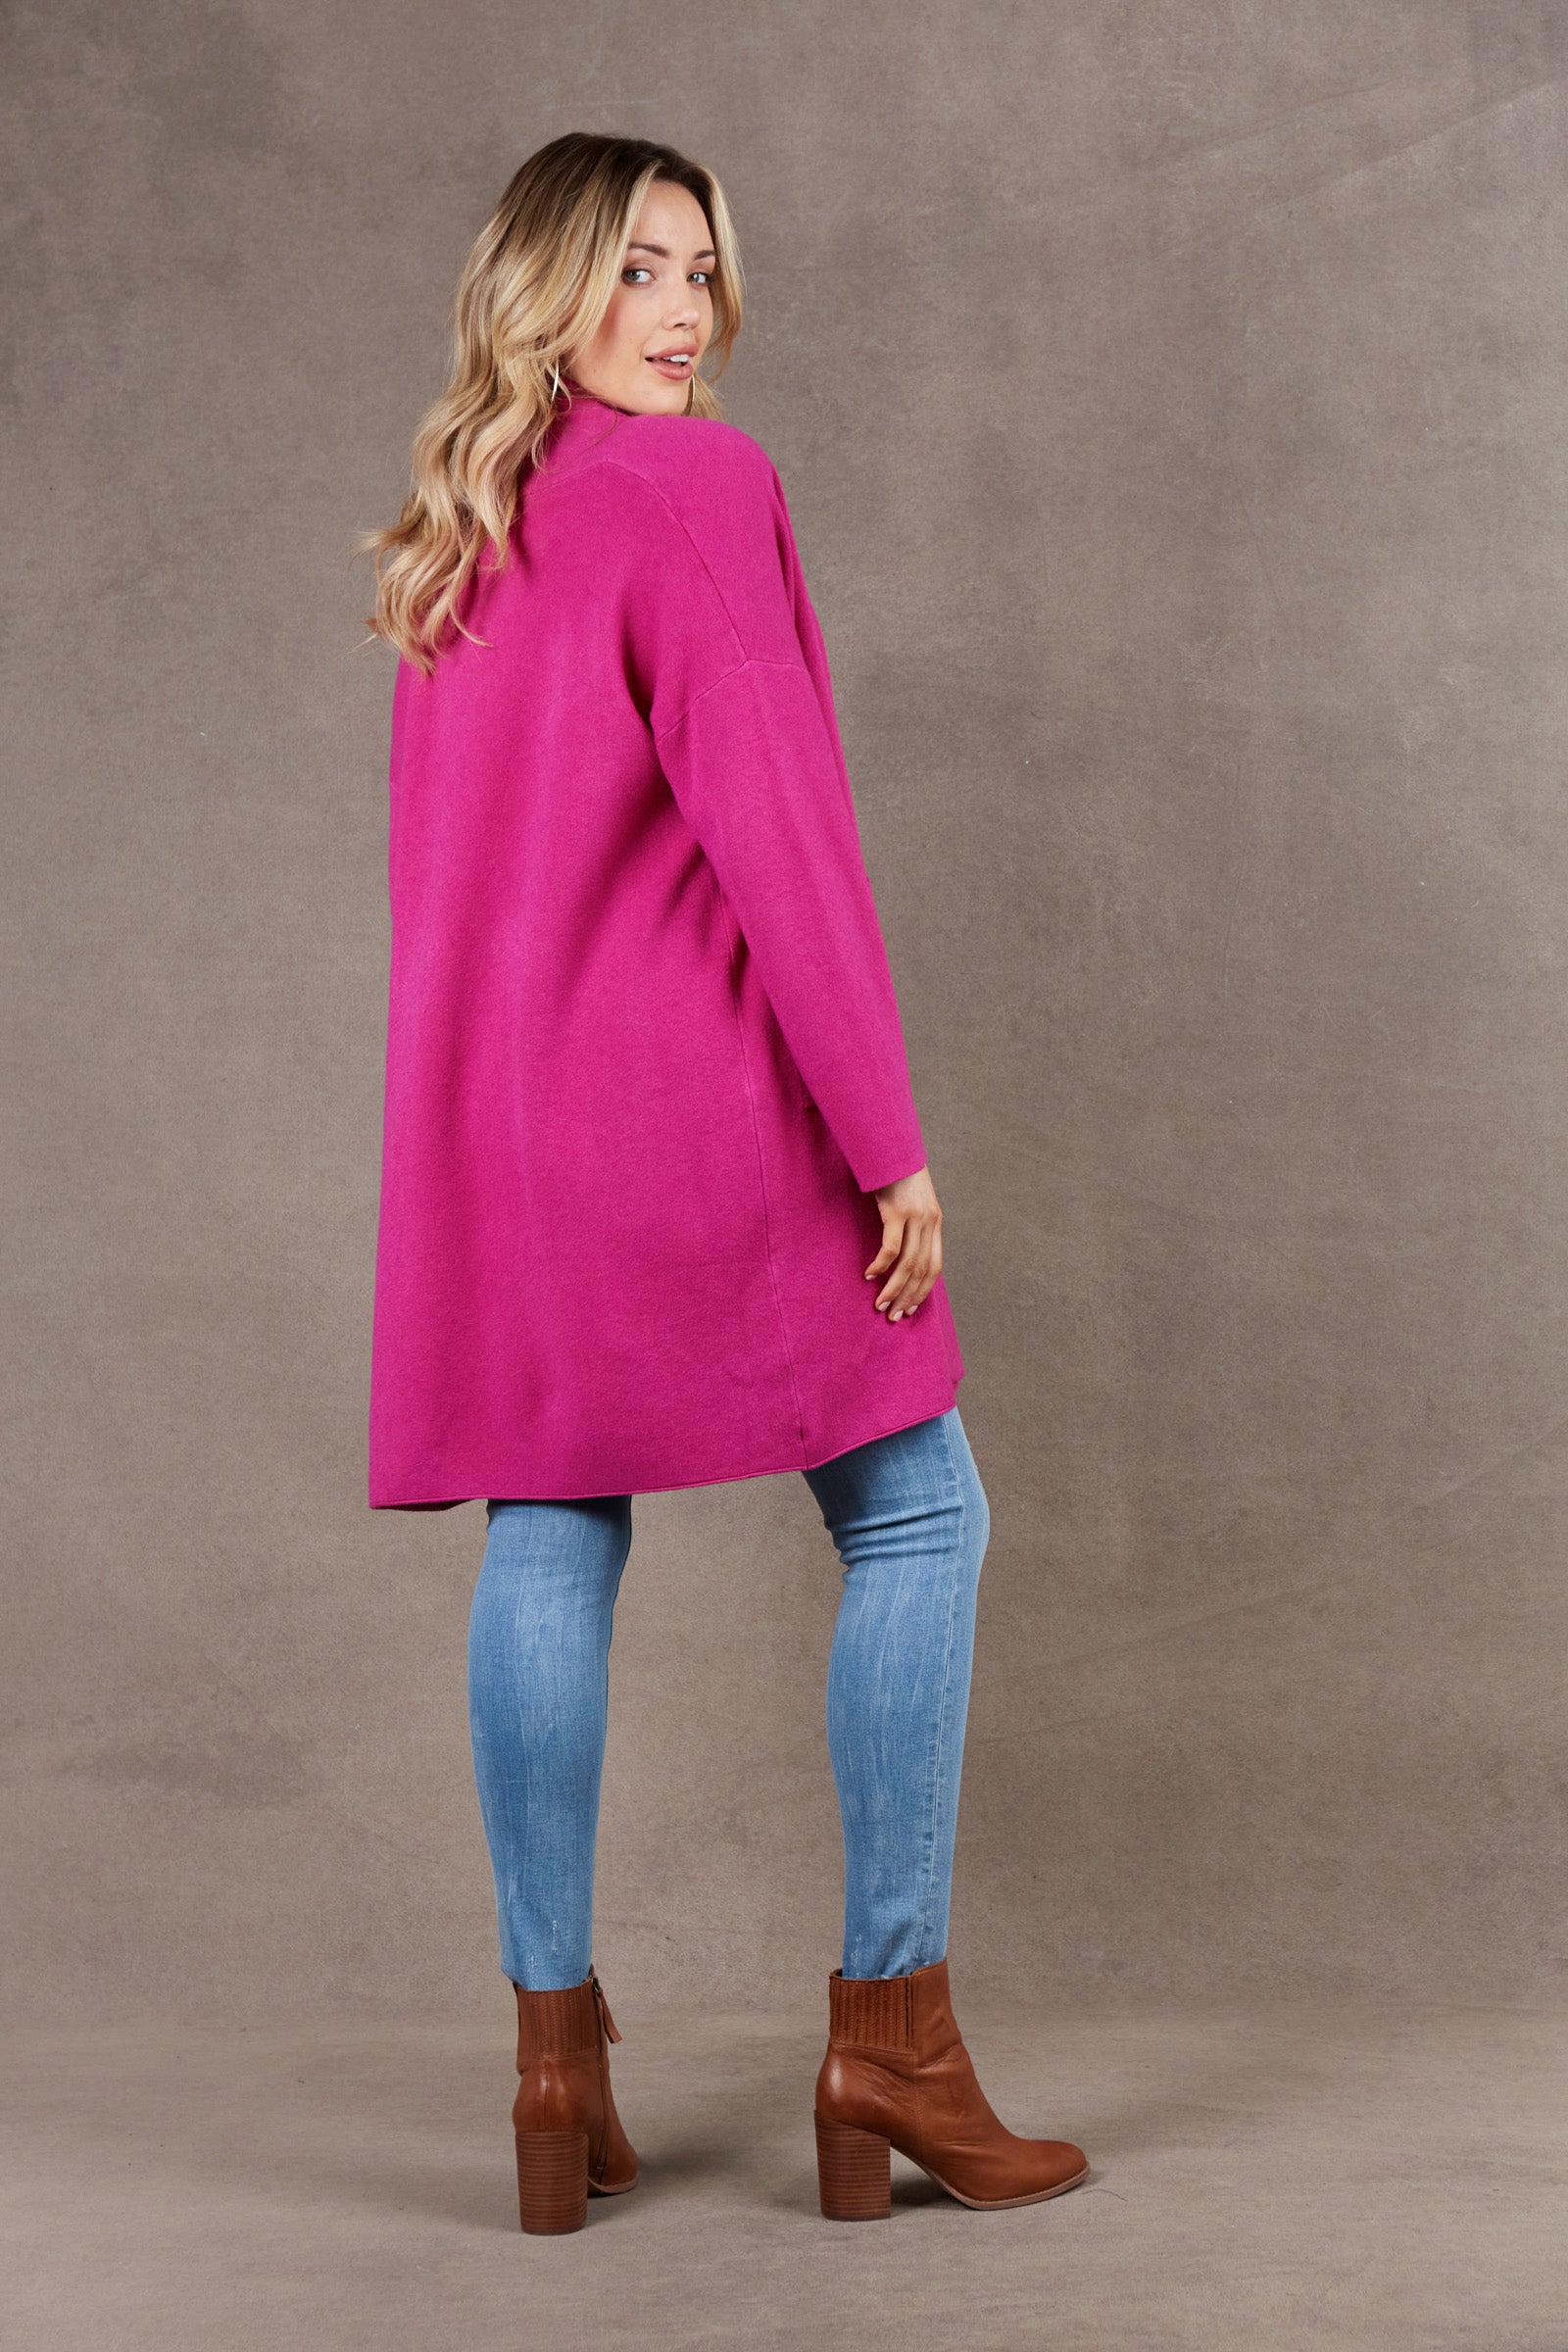 Alawa Cardigan - Magenta - eb&ive Clothing - Knit Cardigan Long One Size